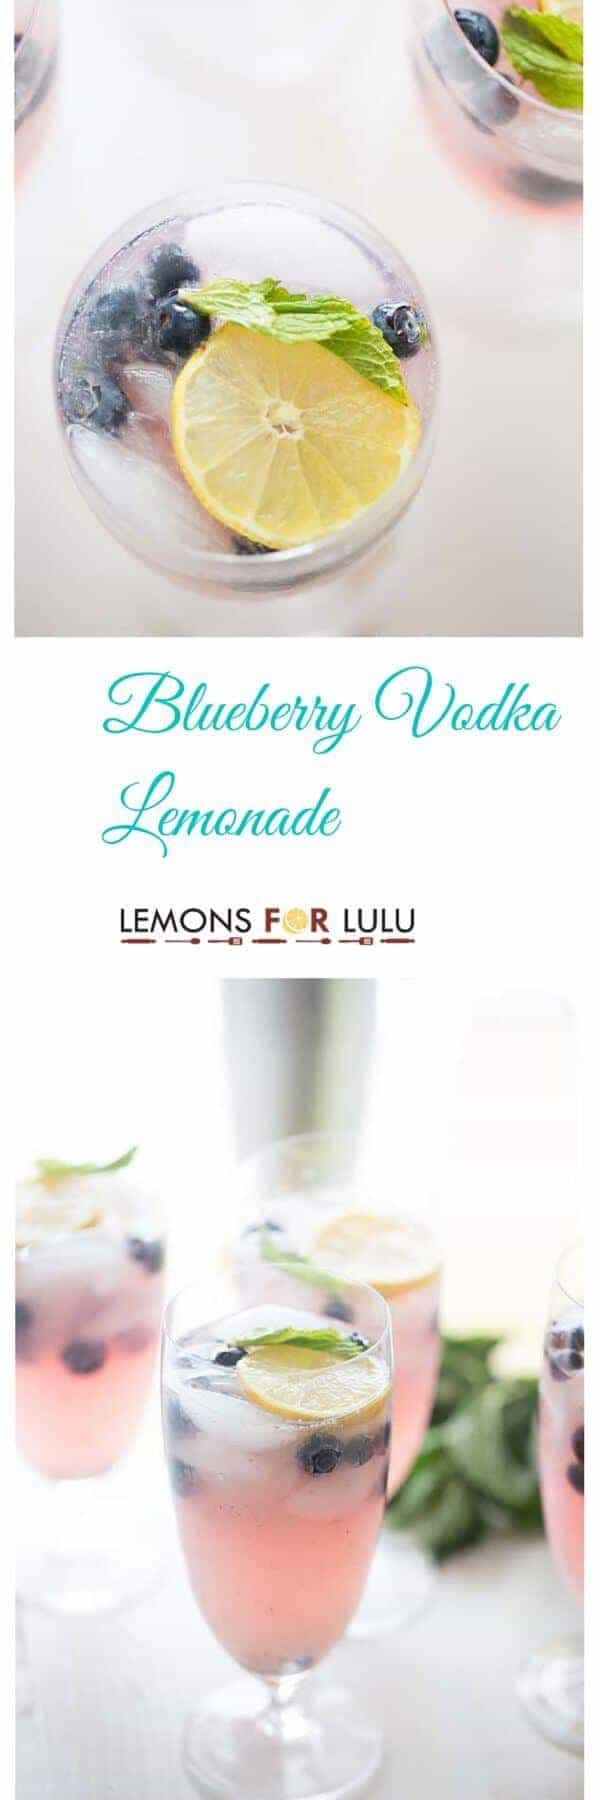 Lemon and Vodka Lemonade title